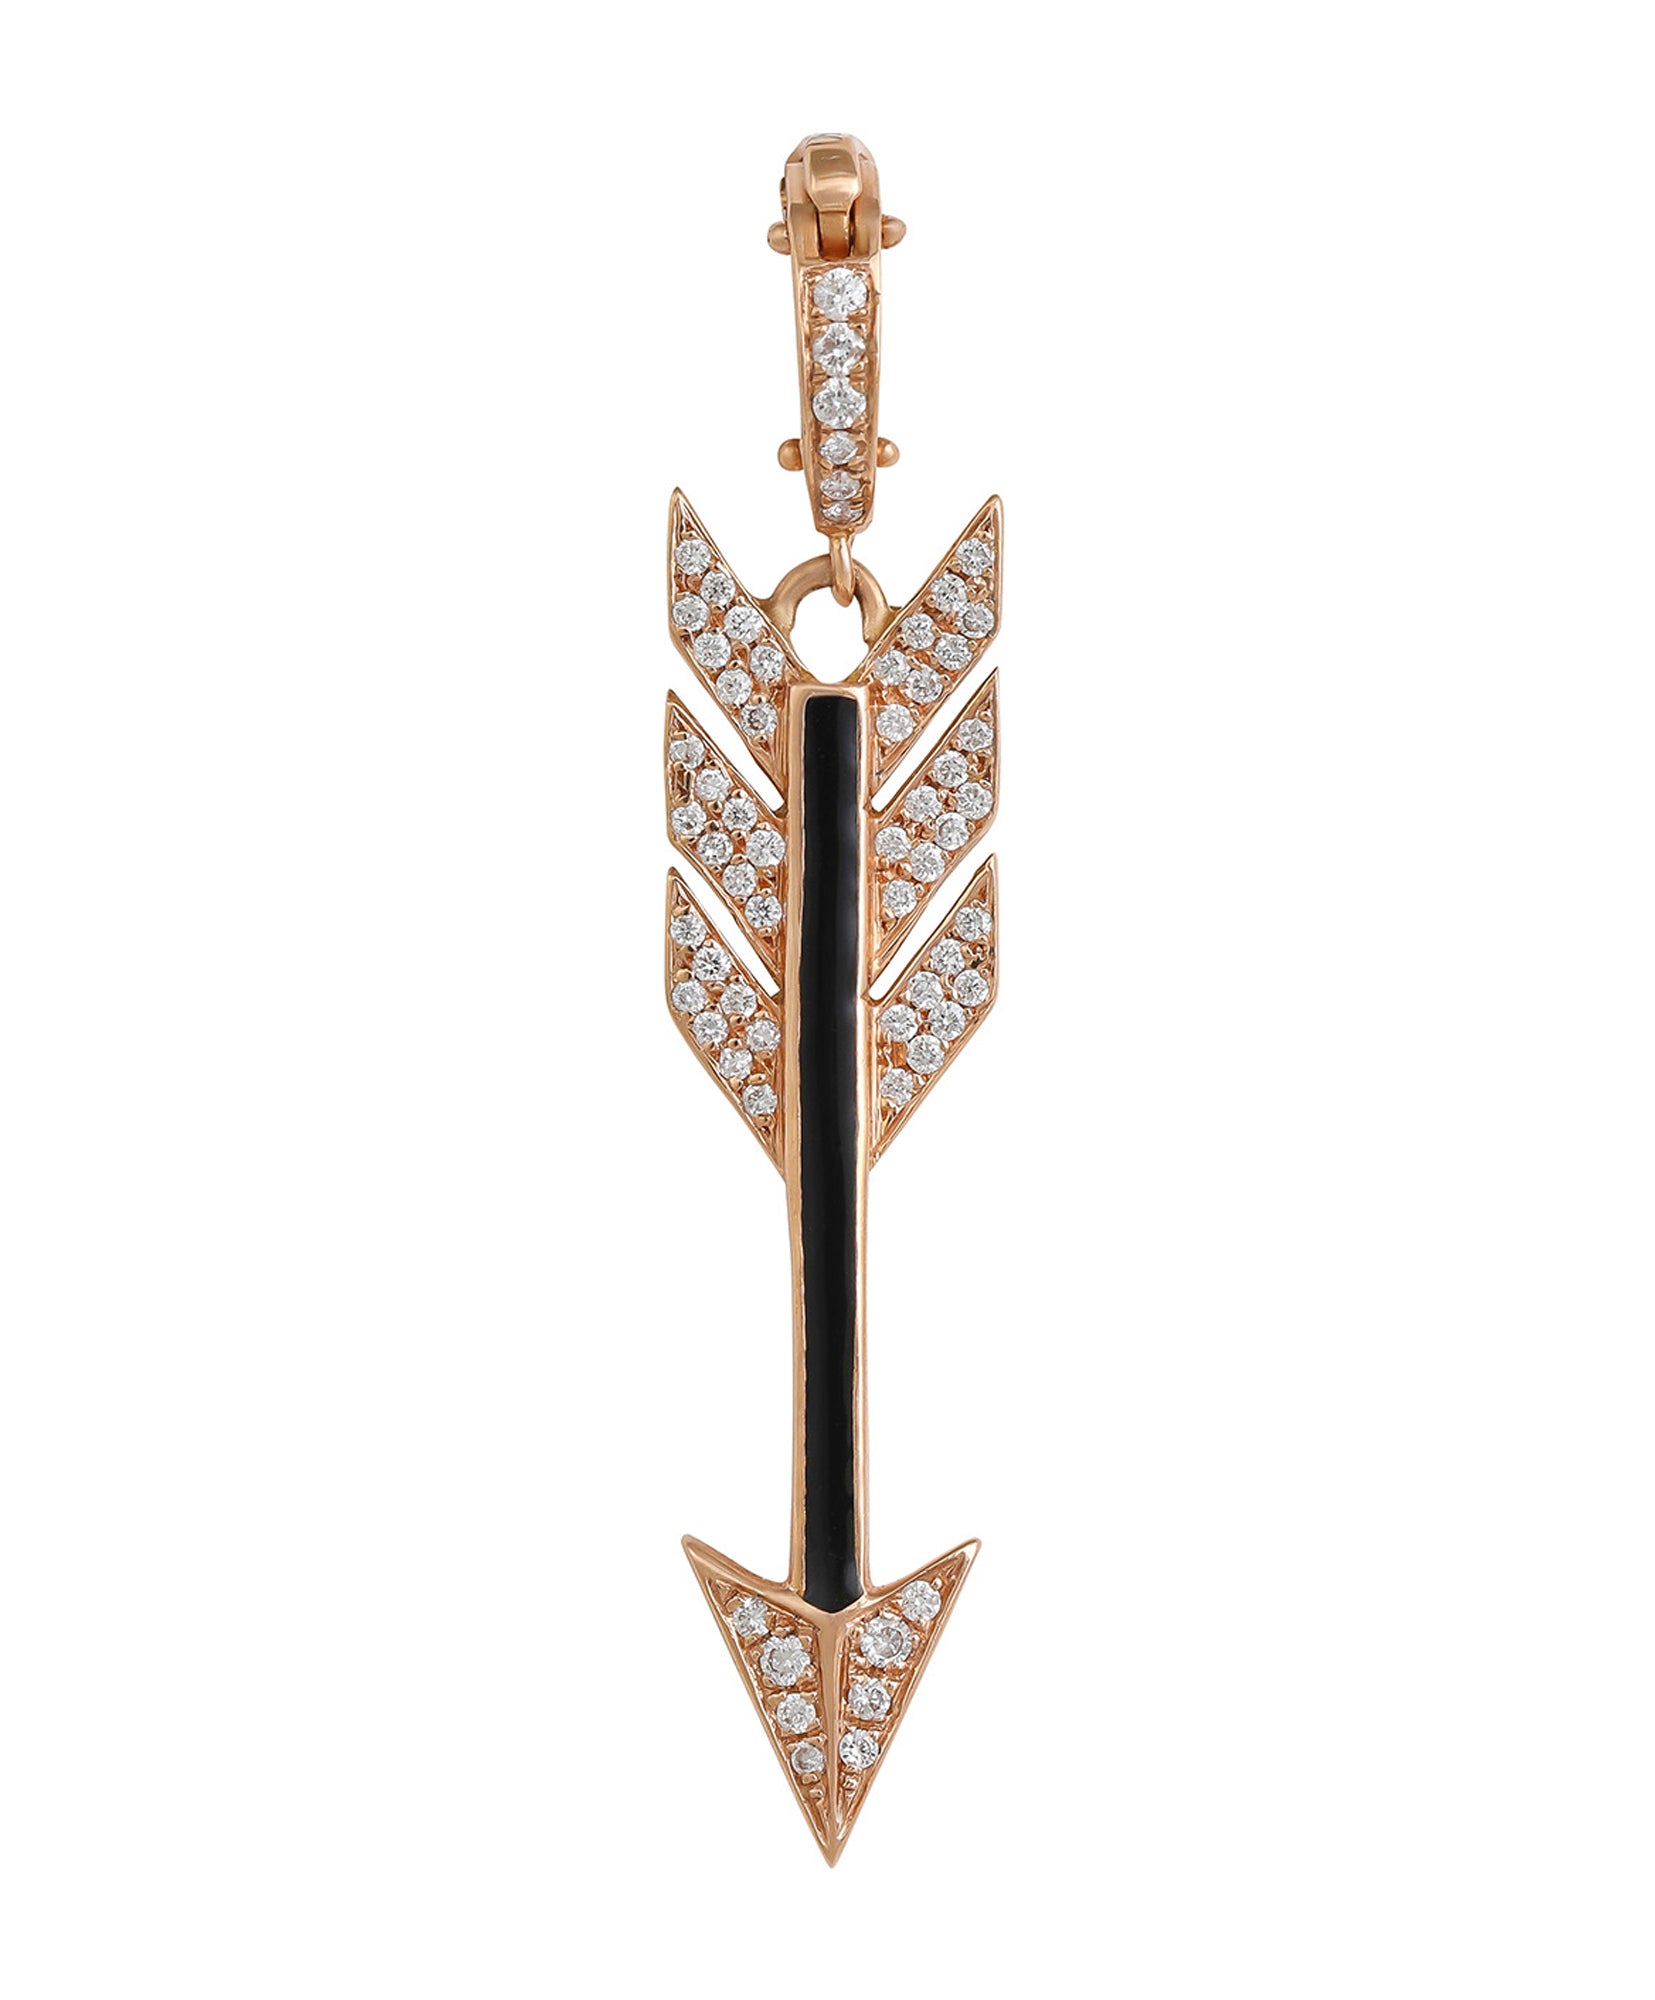 J by Boghossian, necklace, pendant, gold, arrow, Cupid's Arrow, charm, black enamel